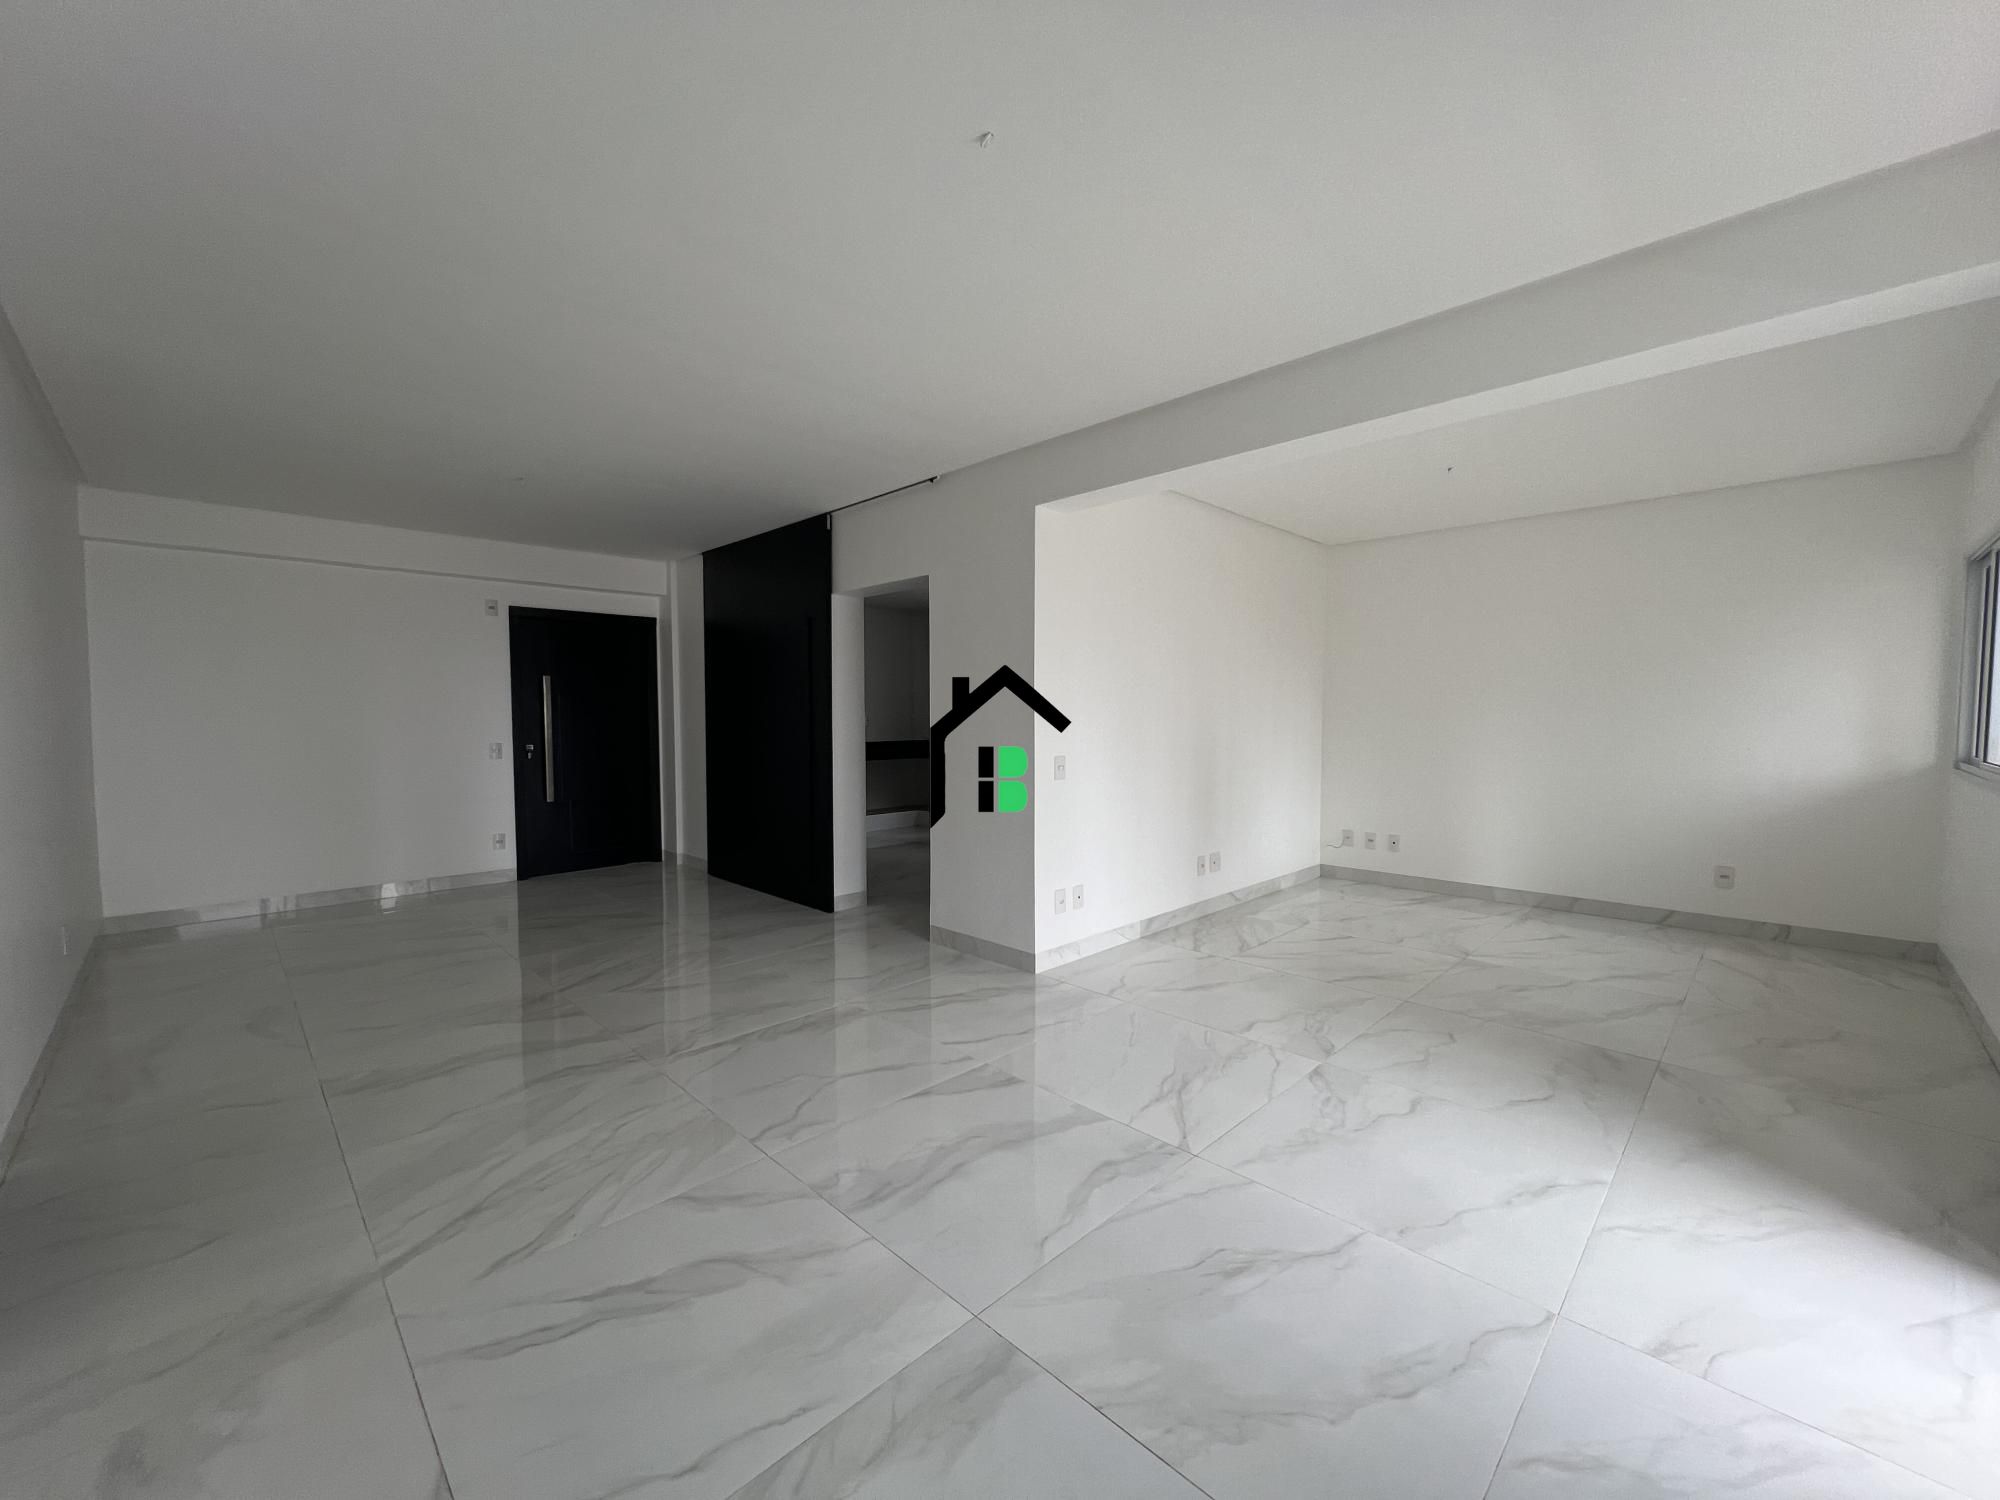 Apartamento, 3 quartos, 181 m² - Foto 3